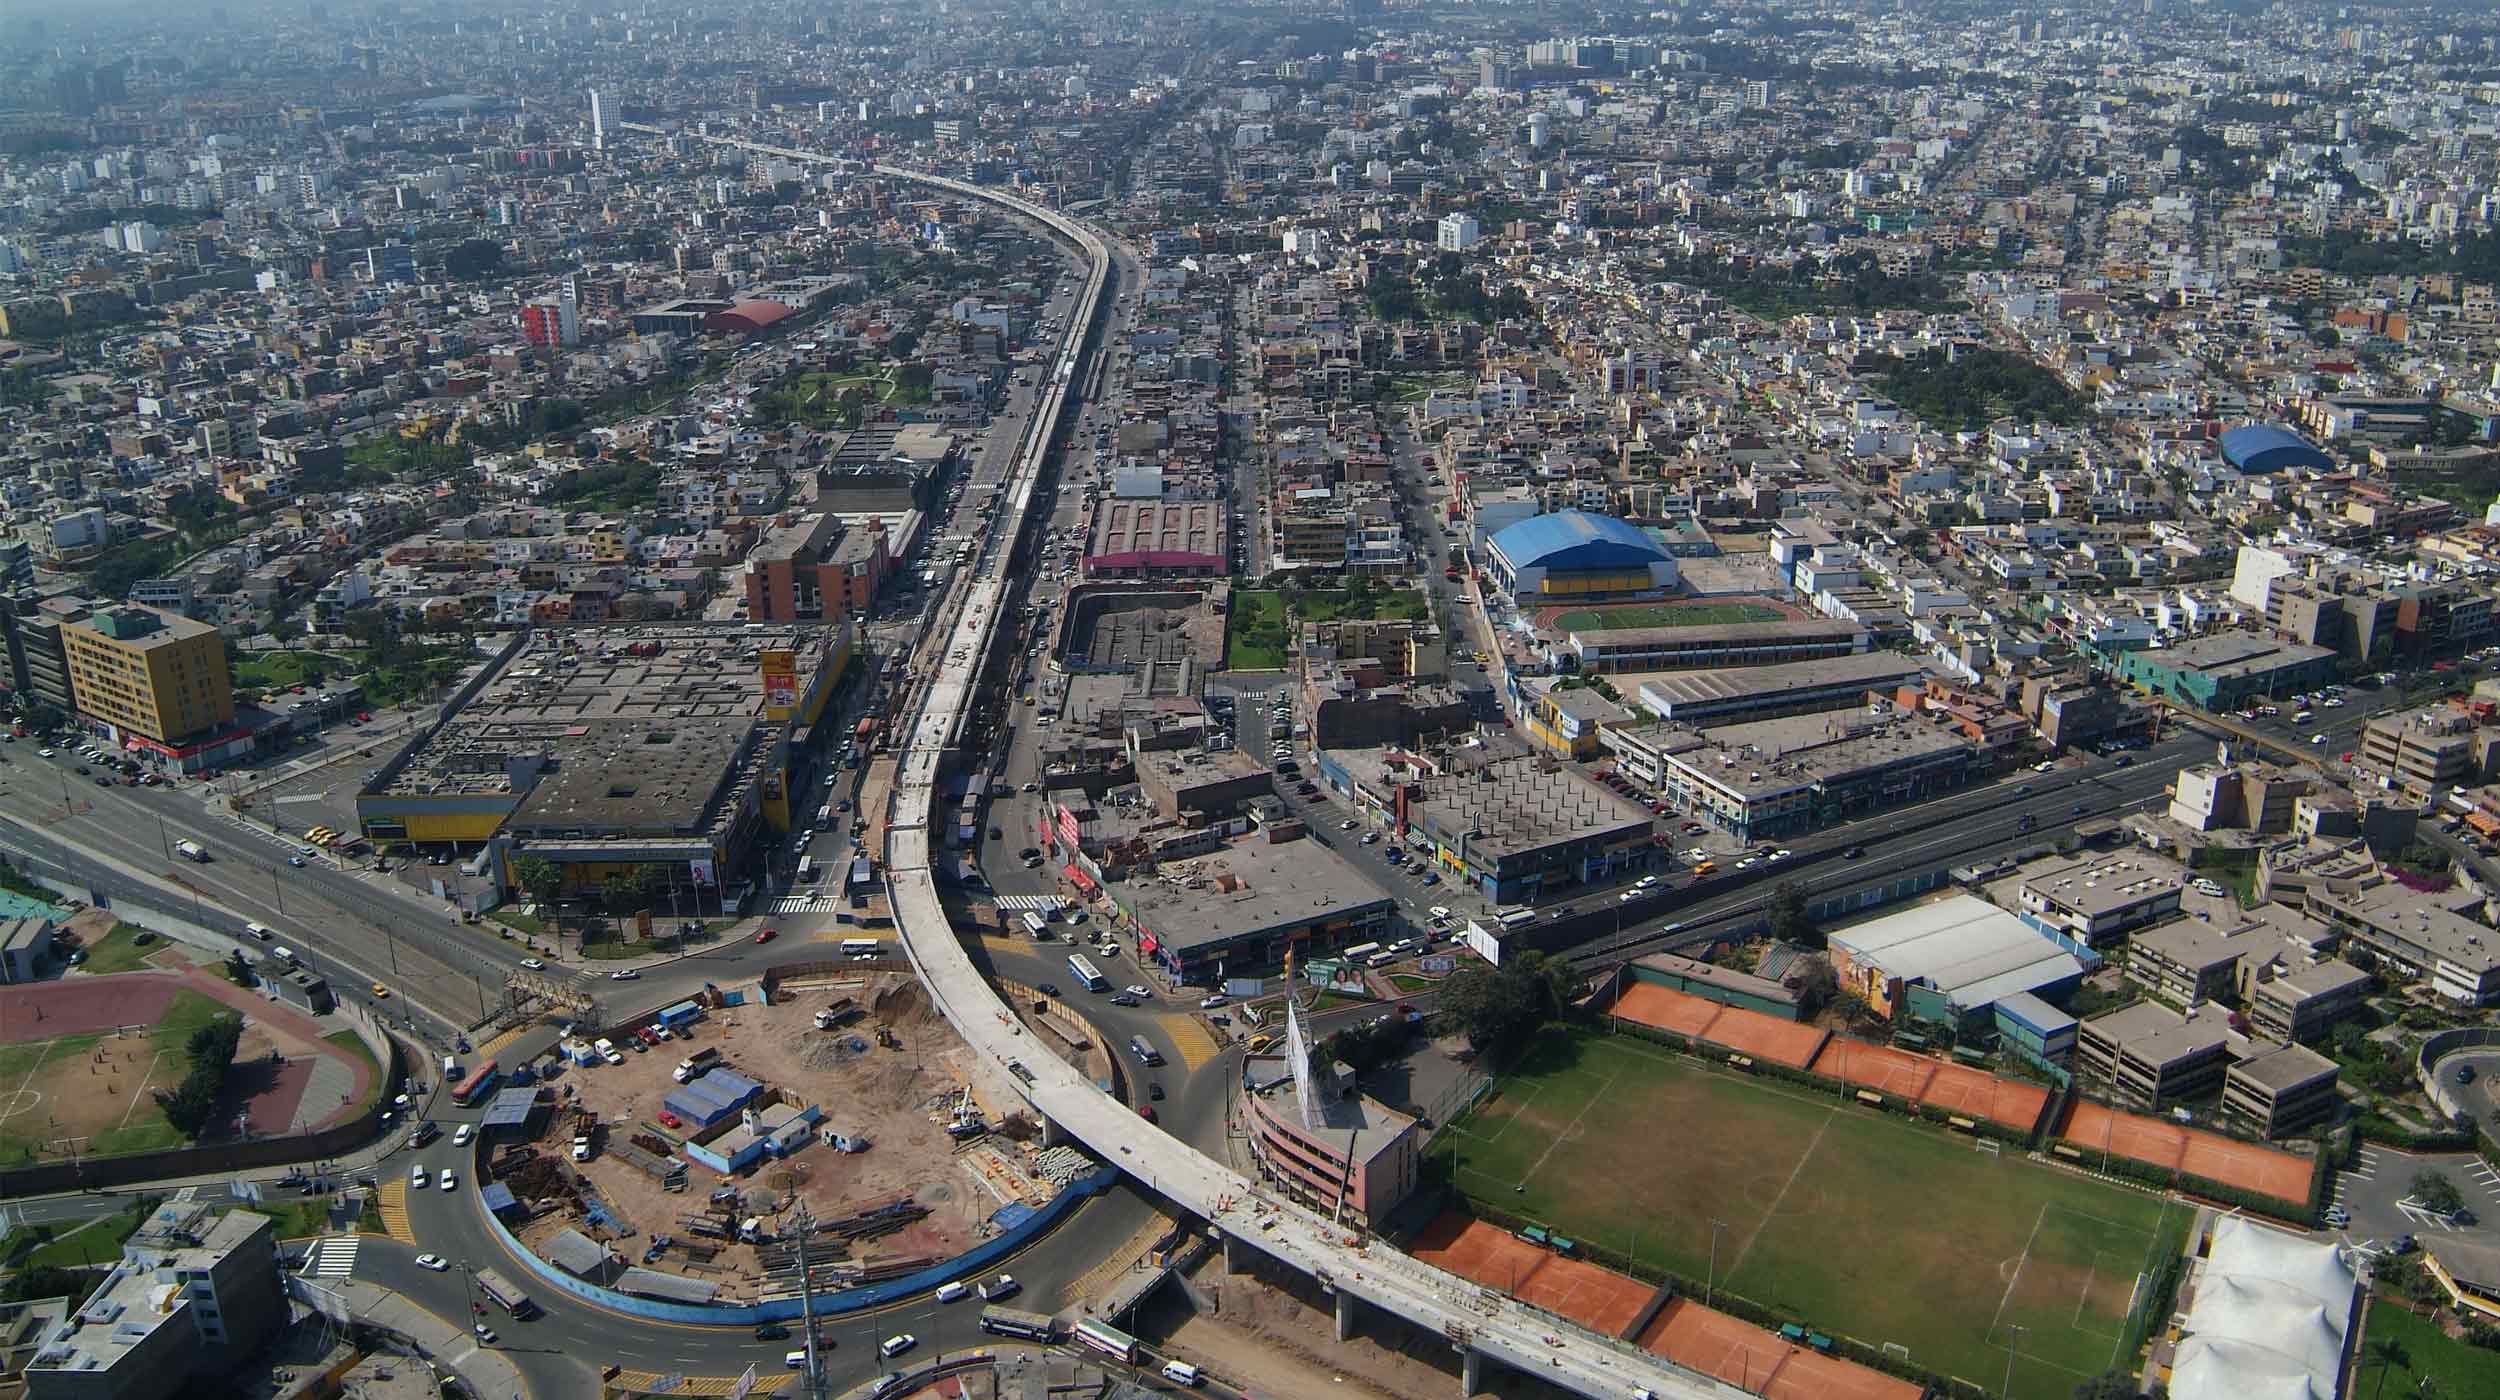 Ubicado en Ciudad de Lima, este proyecto emblemático consiste en la construcción de un viaducto elevado de 12,5 km y 8 estaciones.